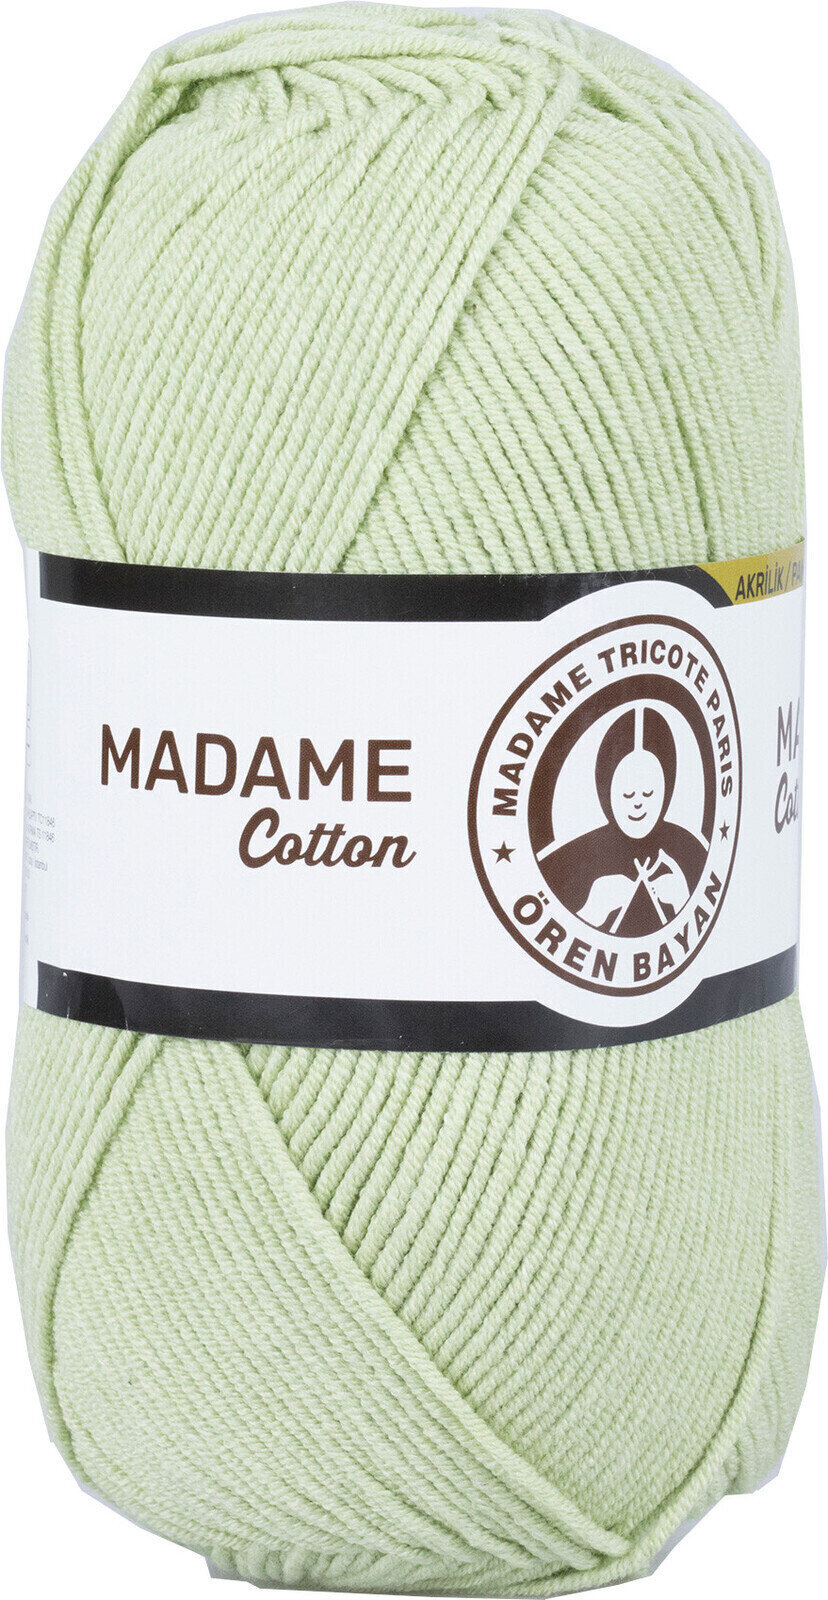 Neulelanka Madame Tricote Paris Madame Cotton 019 Light Green